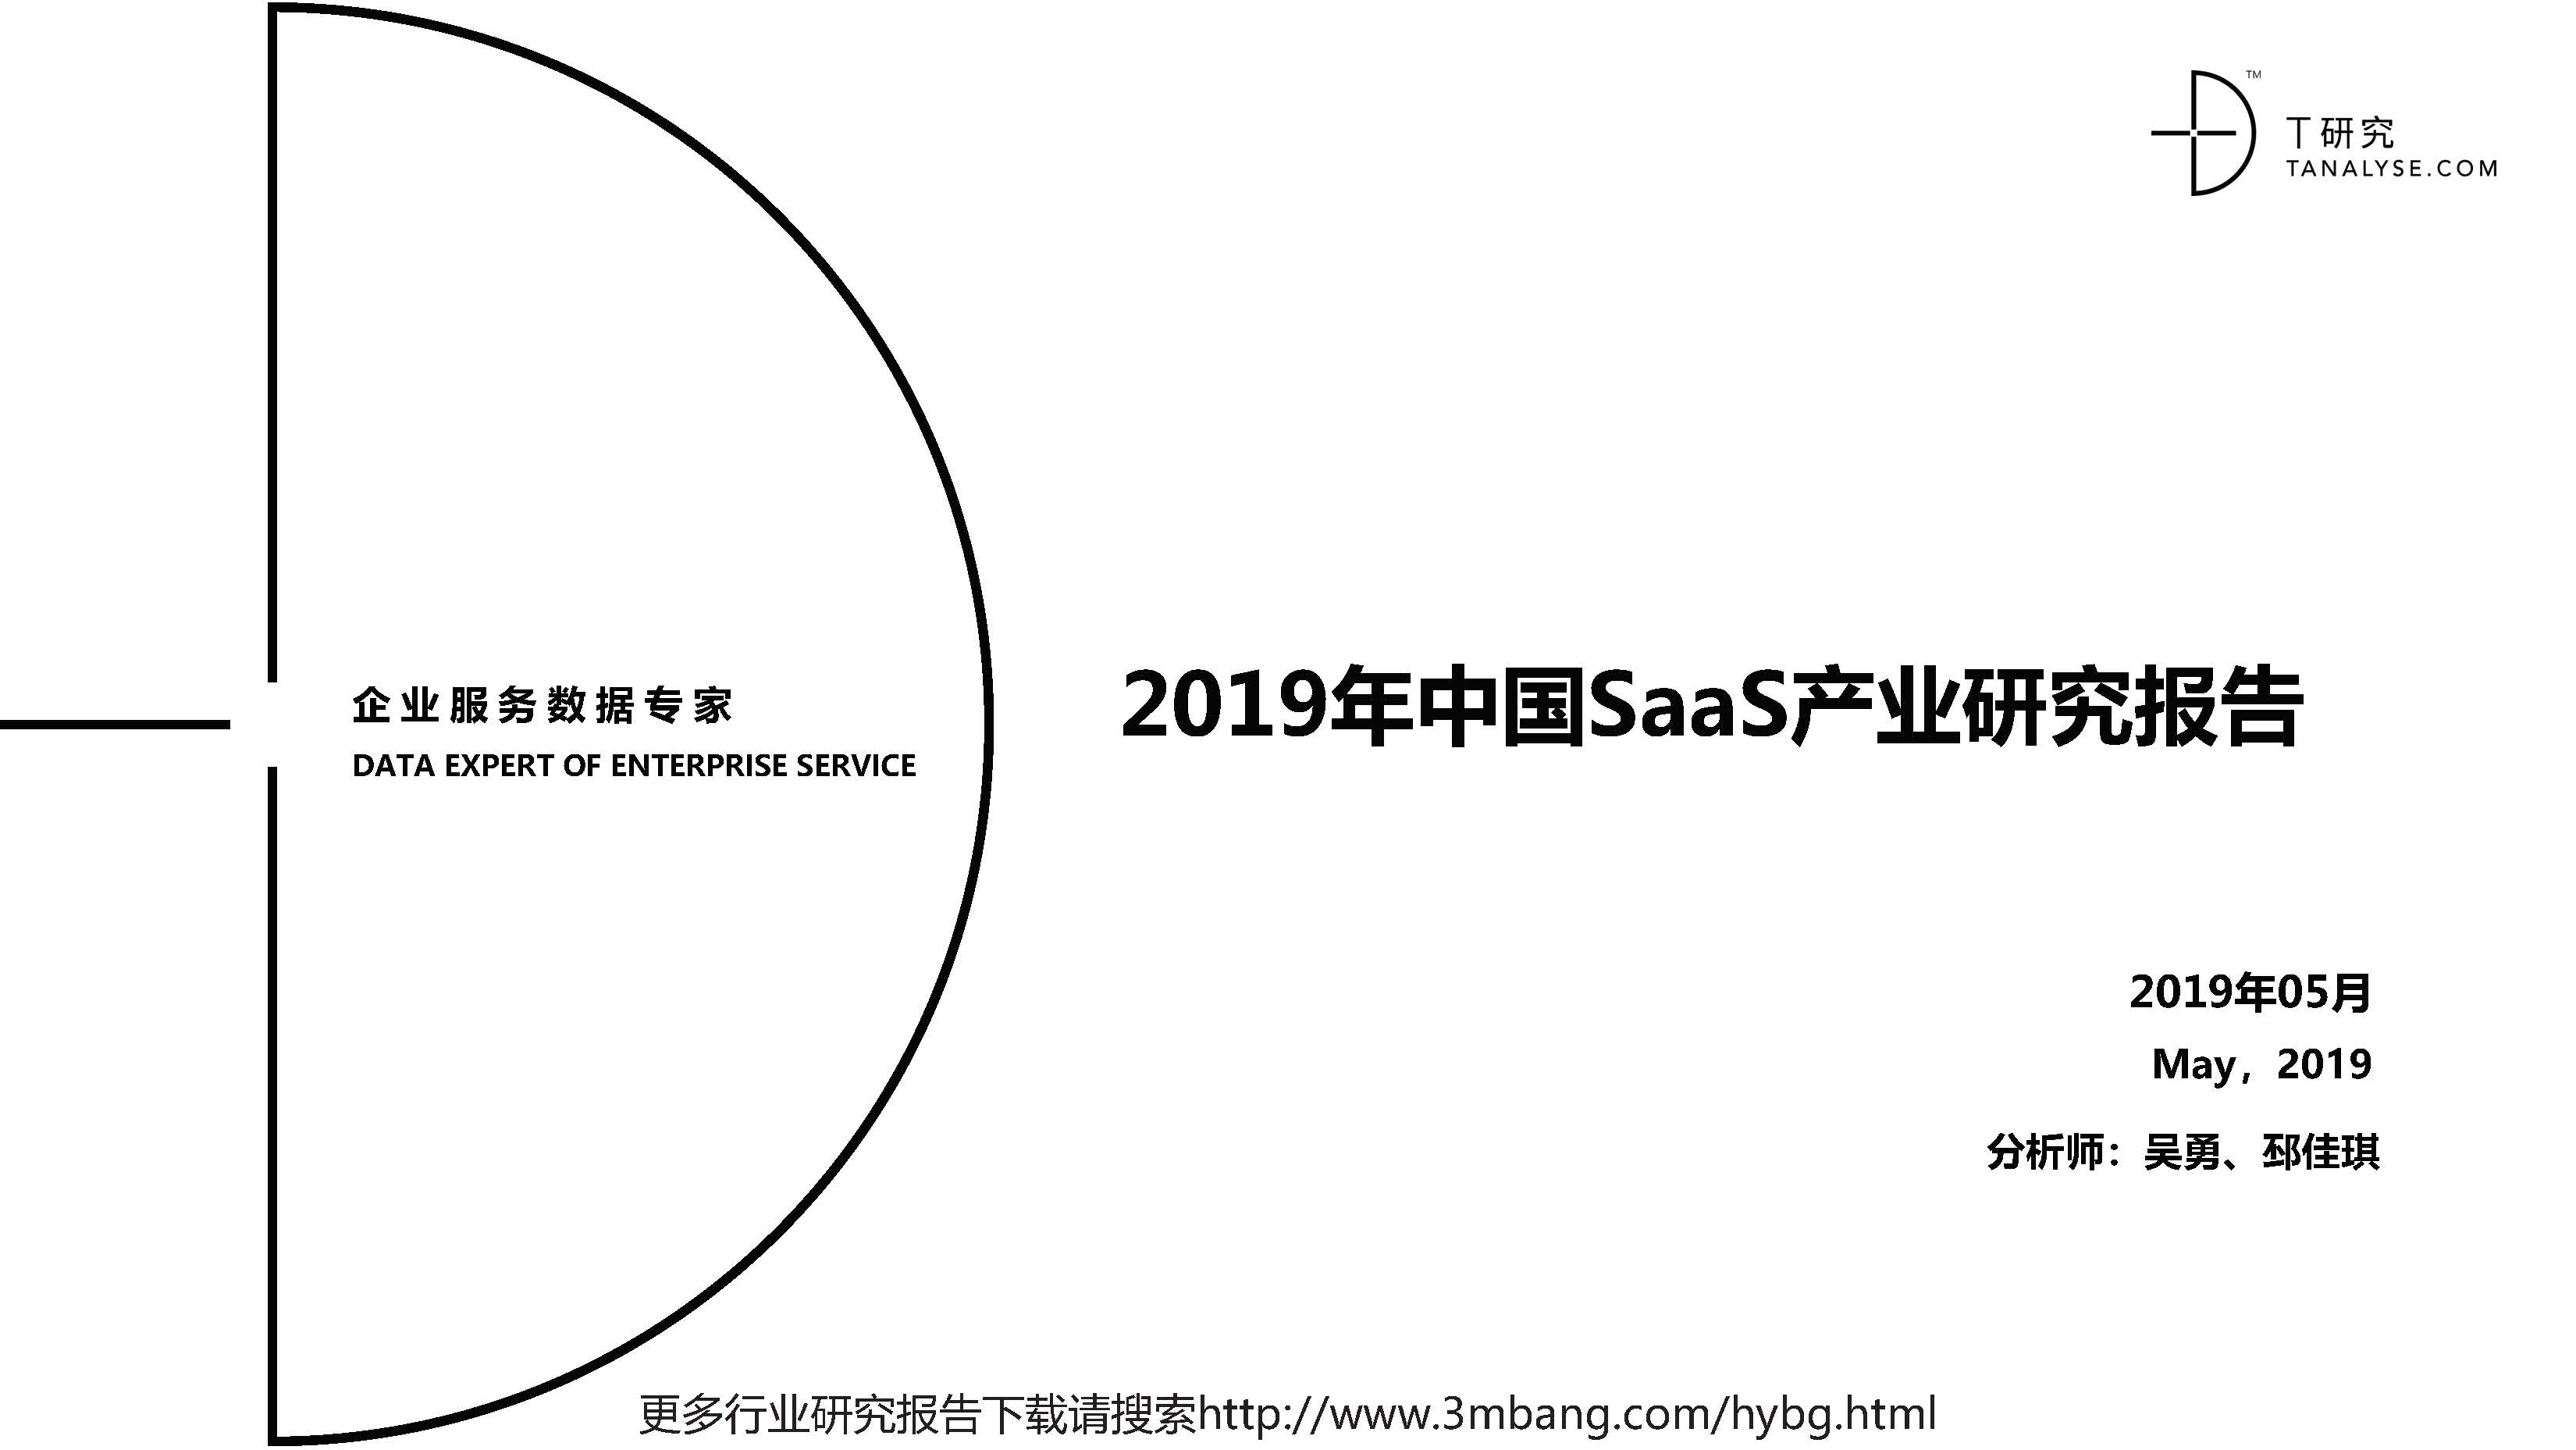 DT研究：2019中国SaaS产业研究报告(附下载地址)